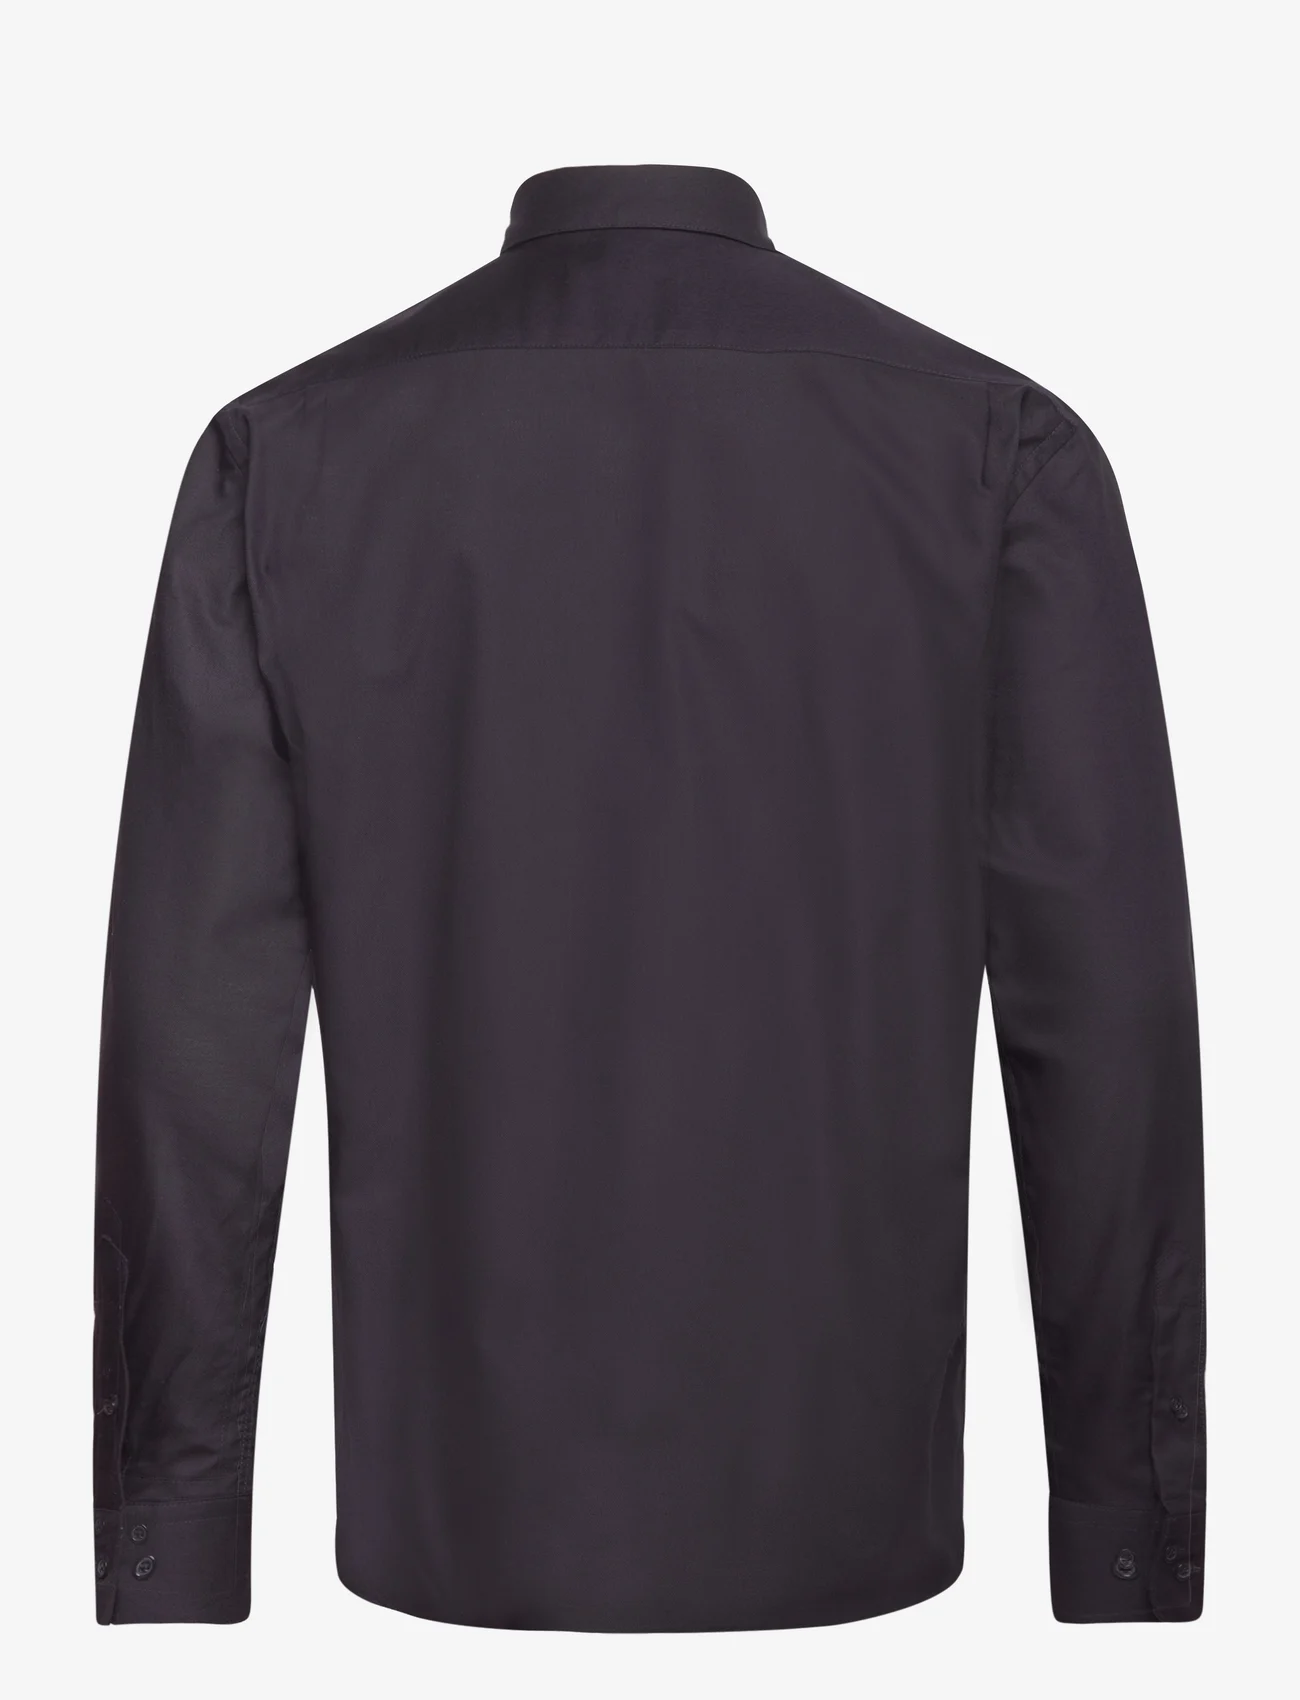 Mads Nørgaard - Cotton Oxford Sune Shirt BD - oxford overhemden - deep well - 1